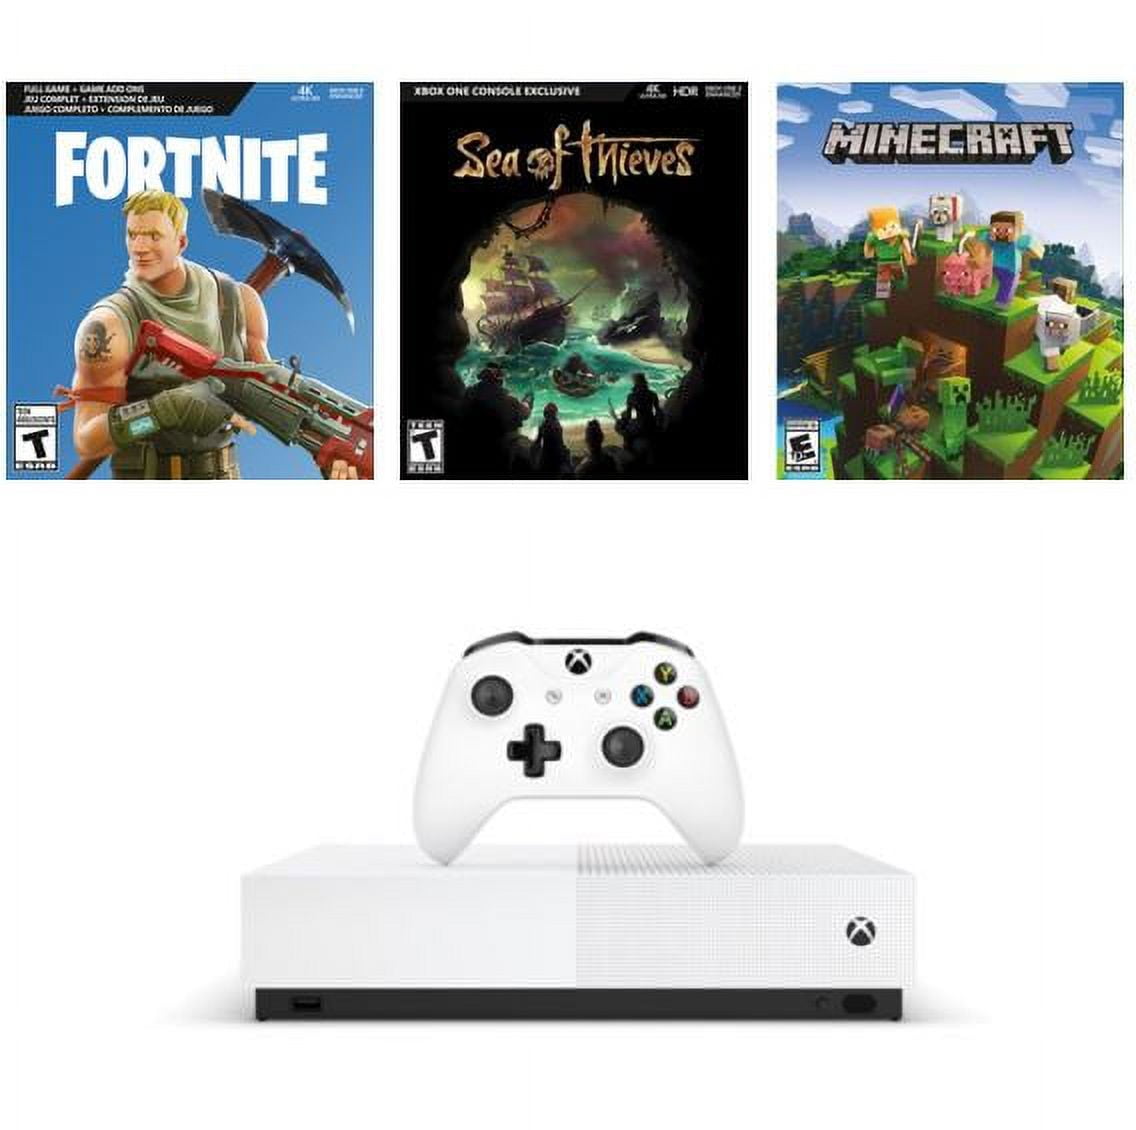  Xbox One S All Digital Edition Console Bundle w